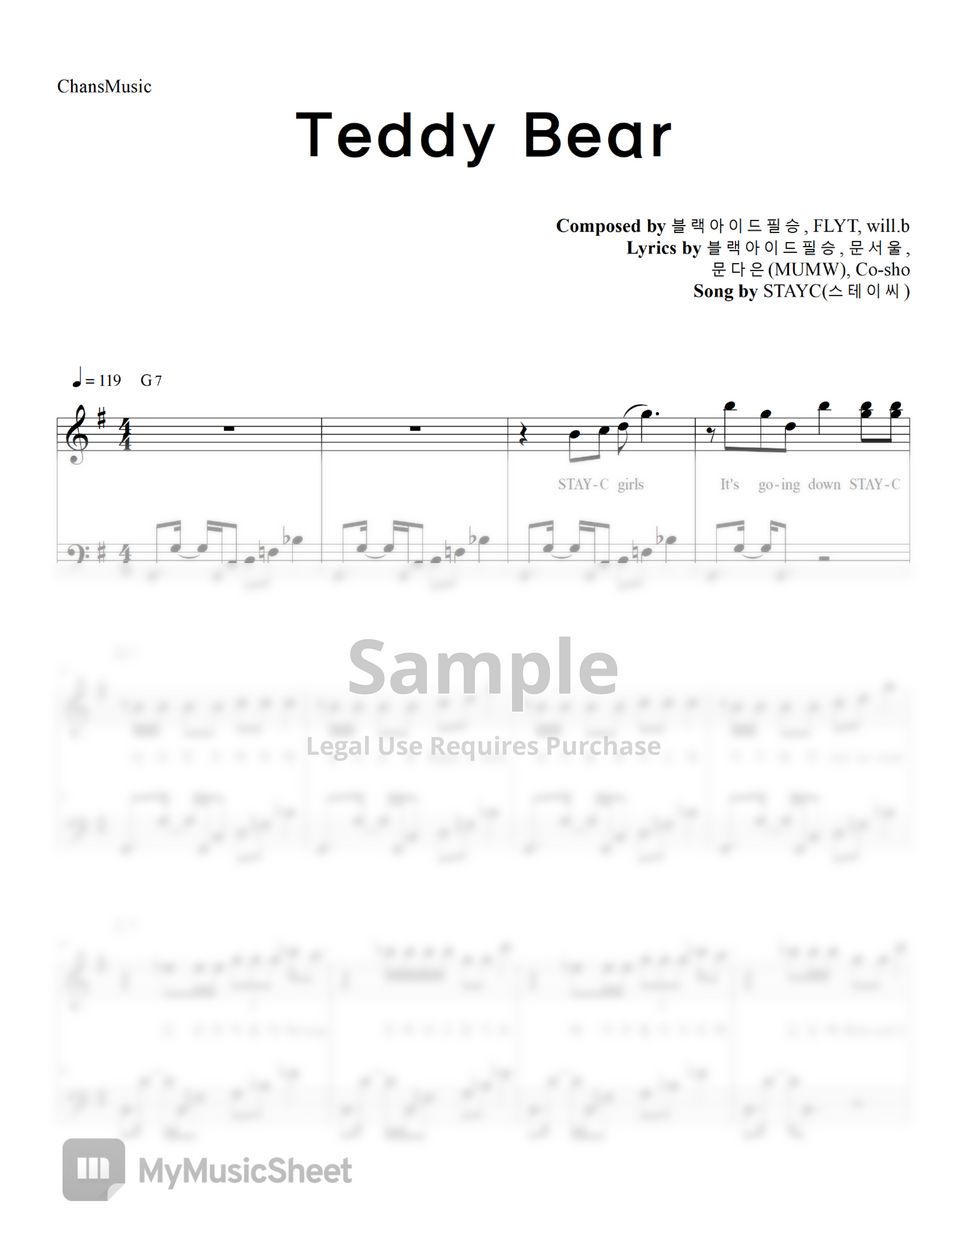 STAYC - Teddy Bear (코드, 가사 포함) by ChansMusic